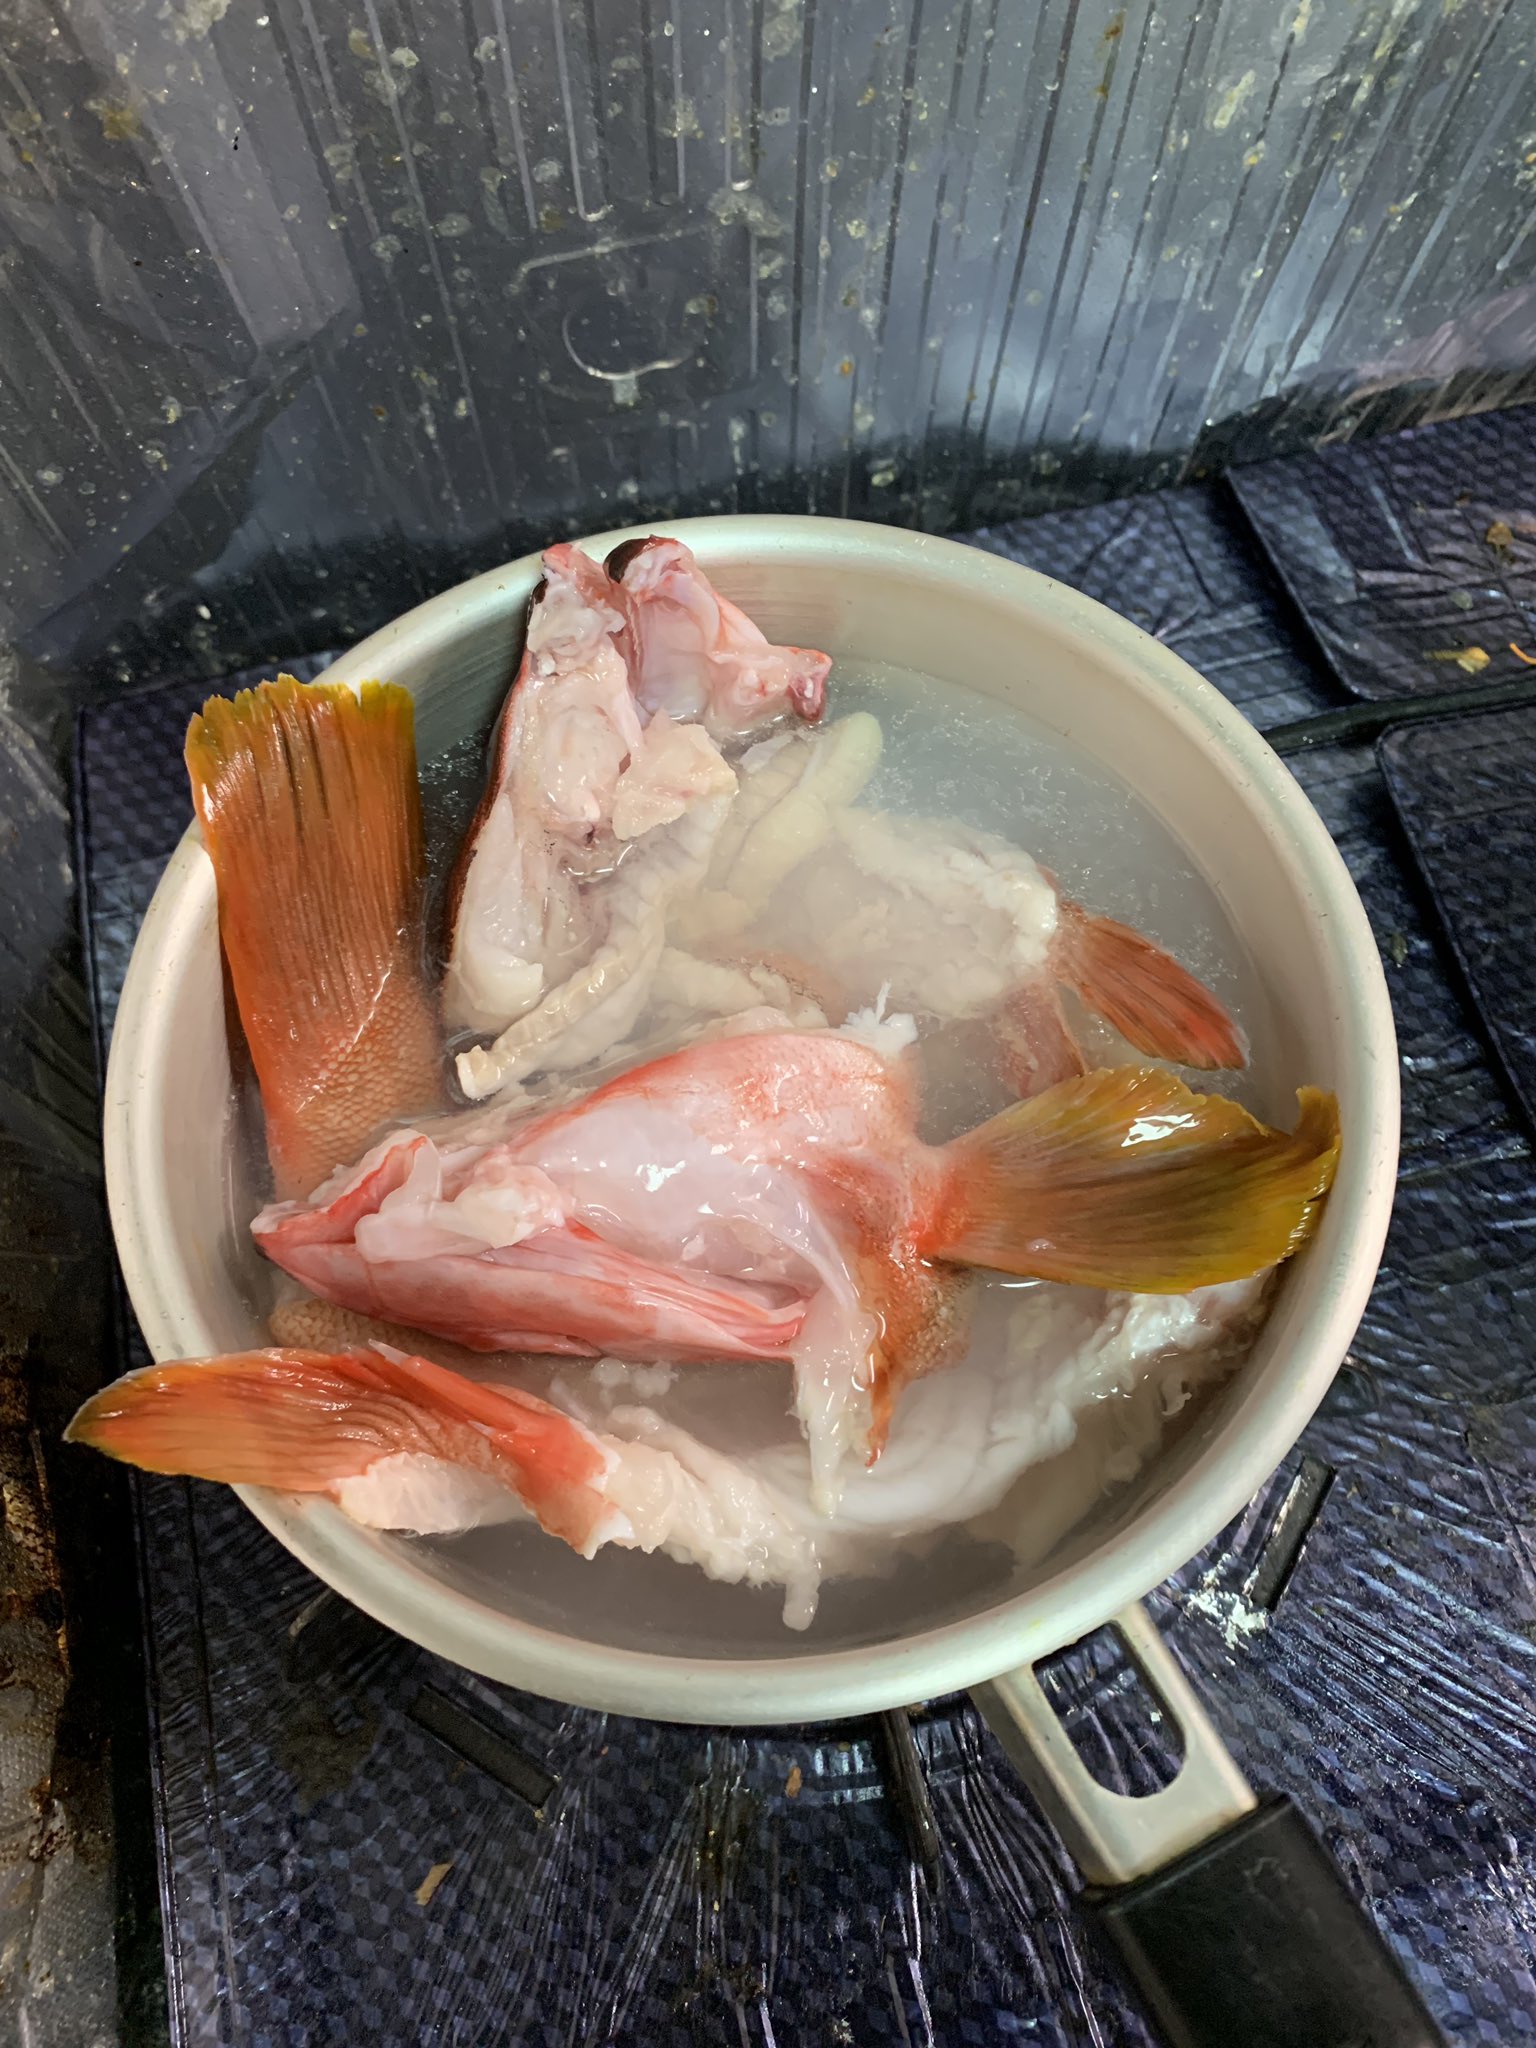 ジギンガーk 釣り 昨晩釣ったアカハタのアラを 今晩は煮付けにしますよ まずは湯がいていきます 式根島 アカハタ 根魚 根魚料理 ロックフィッシュ 釣った魚を料理 魚料理 釣り人飯 T Co Hryk9kxlyb Twitter